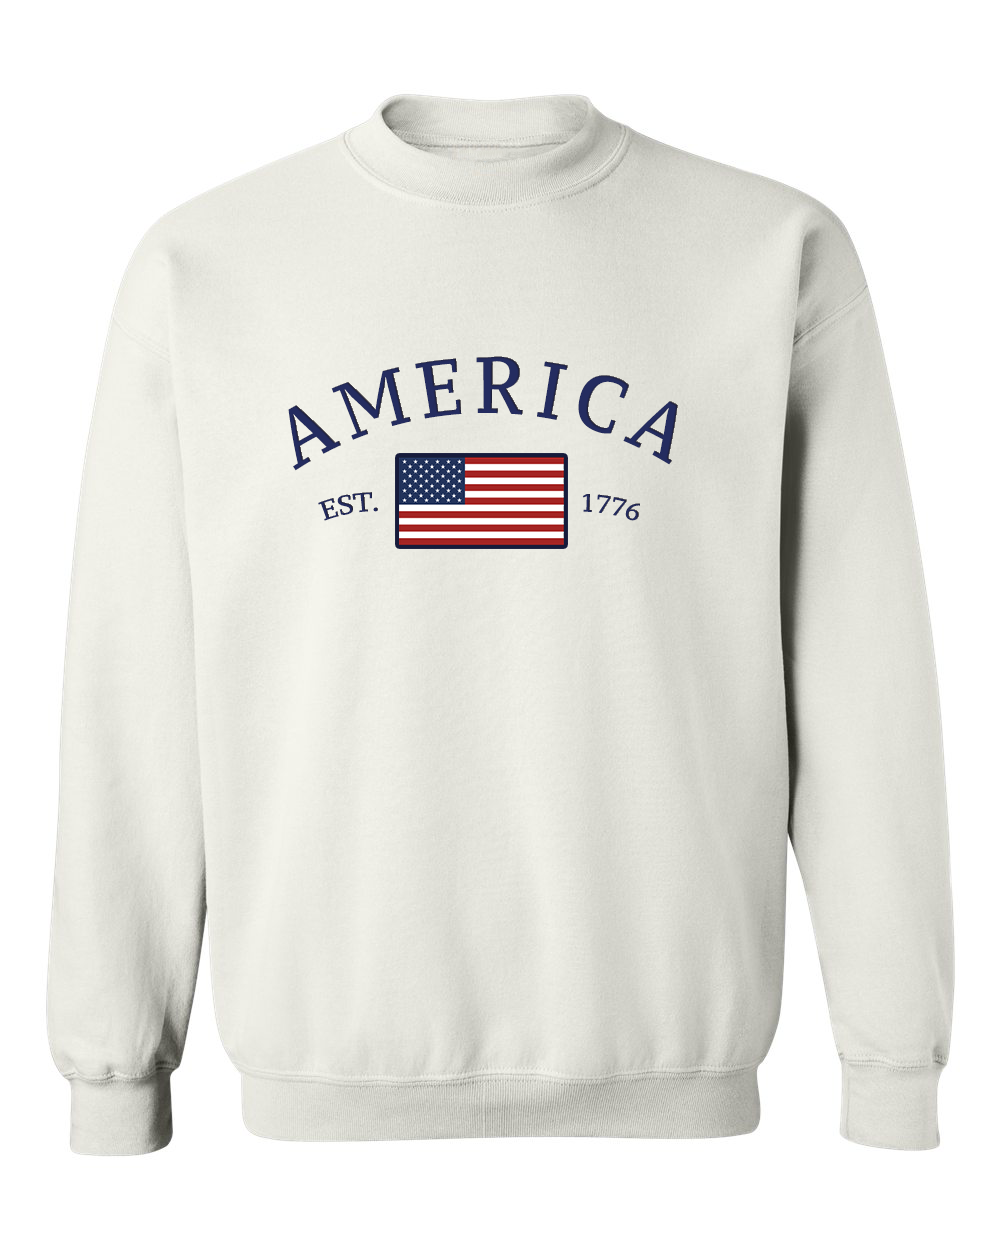 America 1776 Sweatshirt